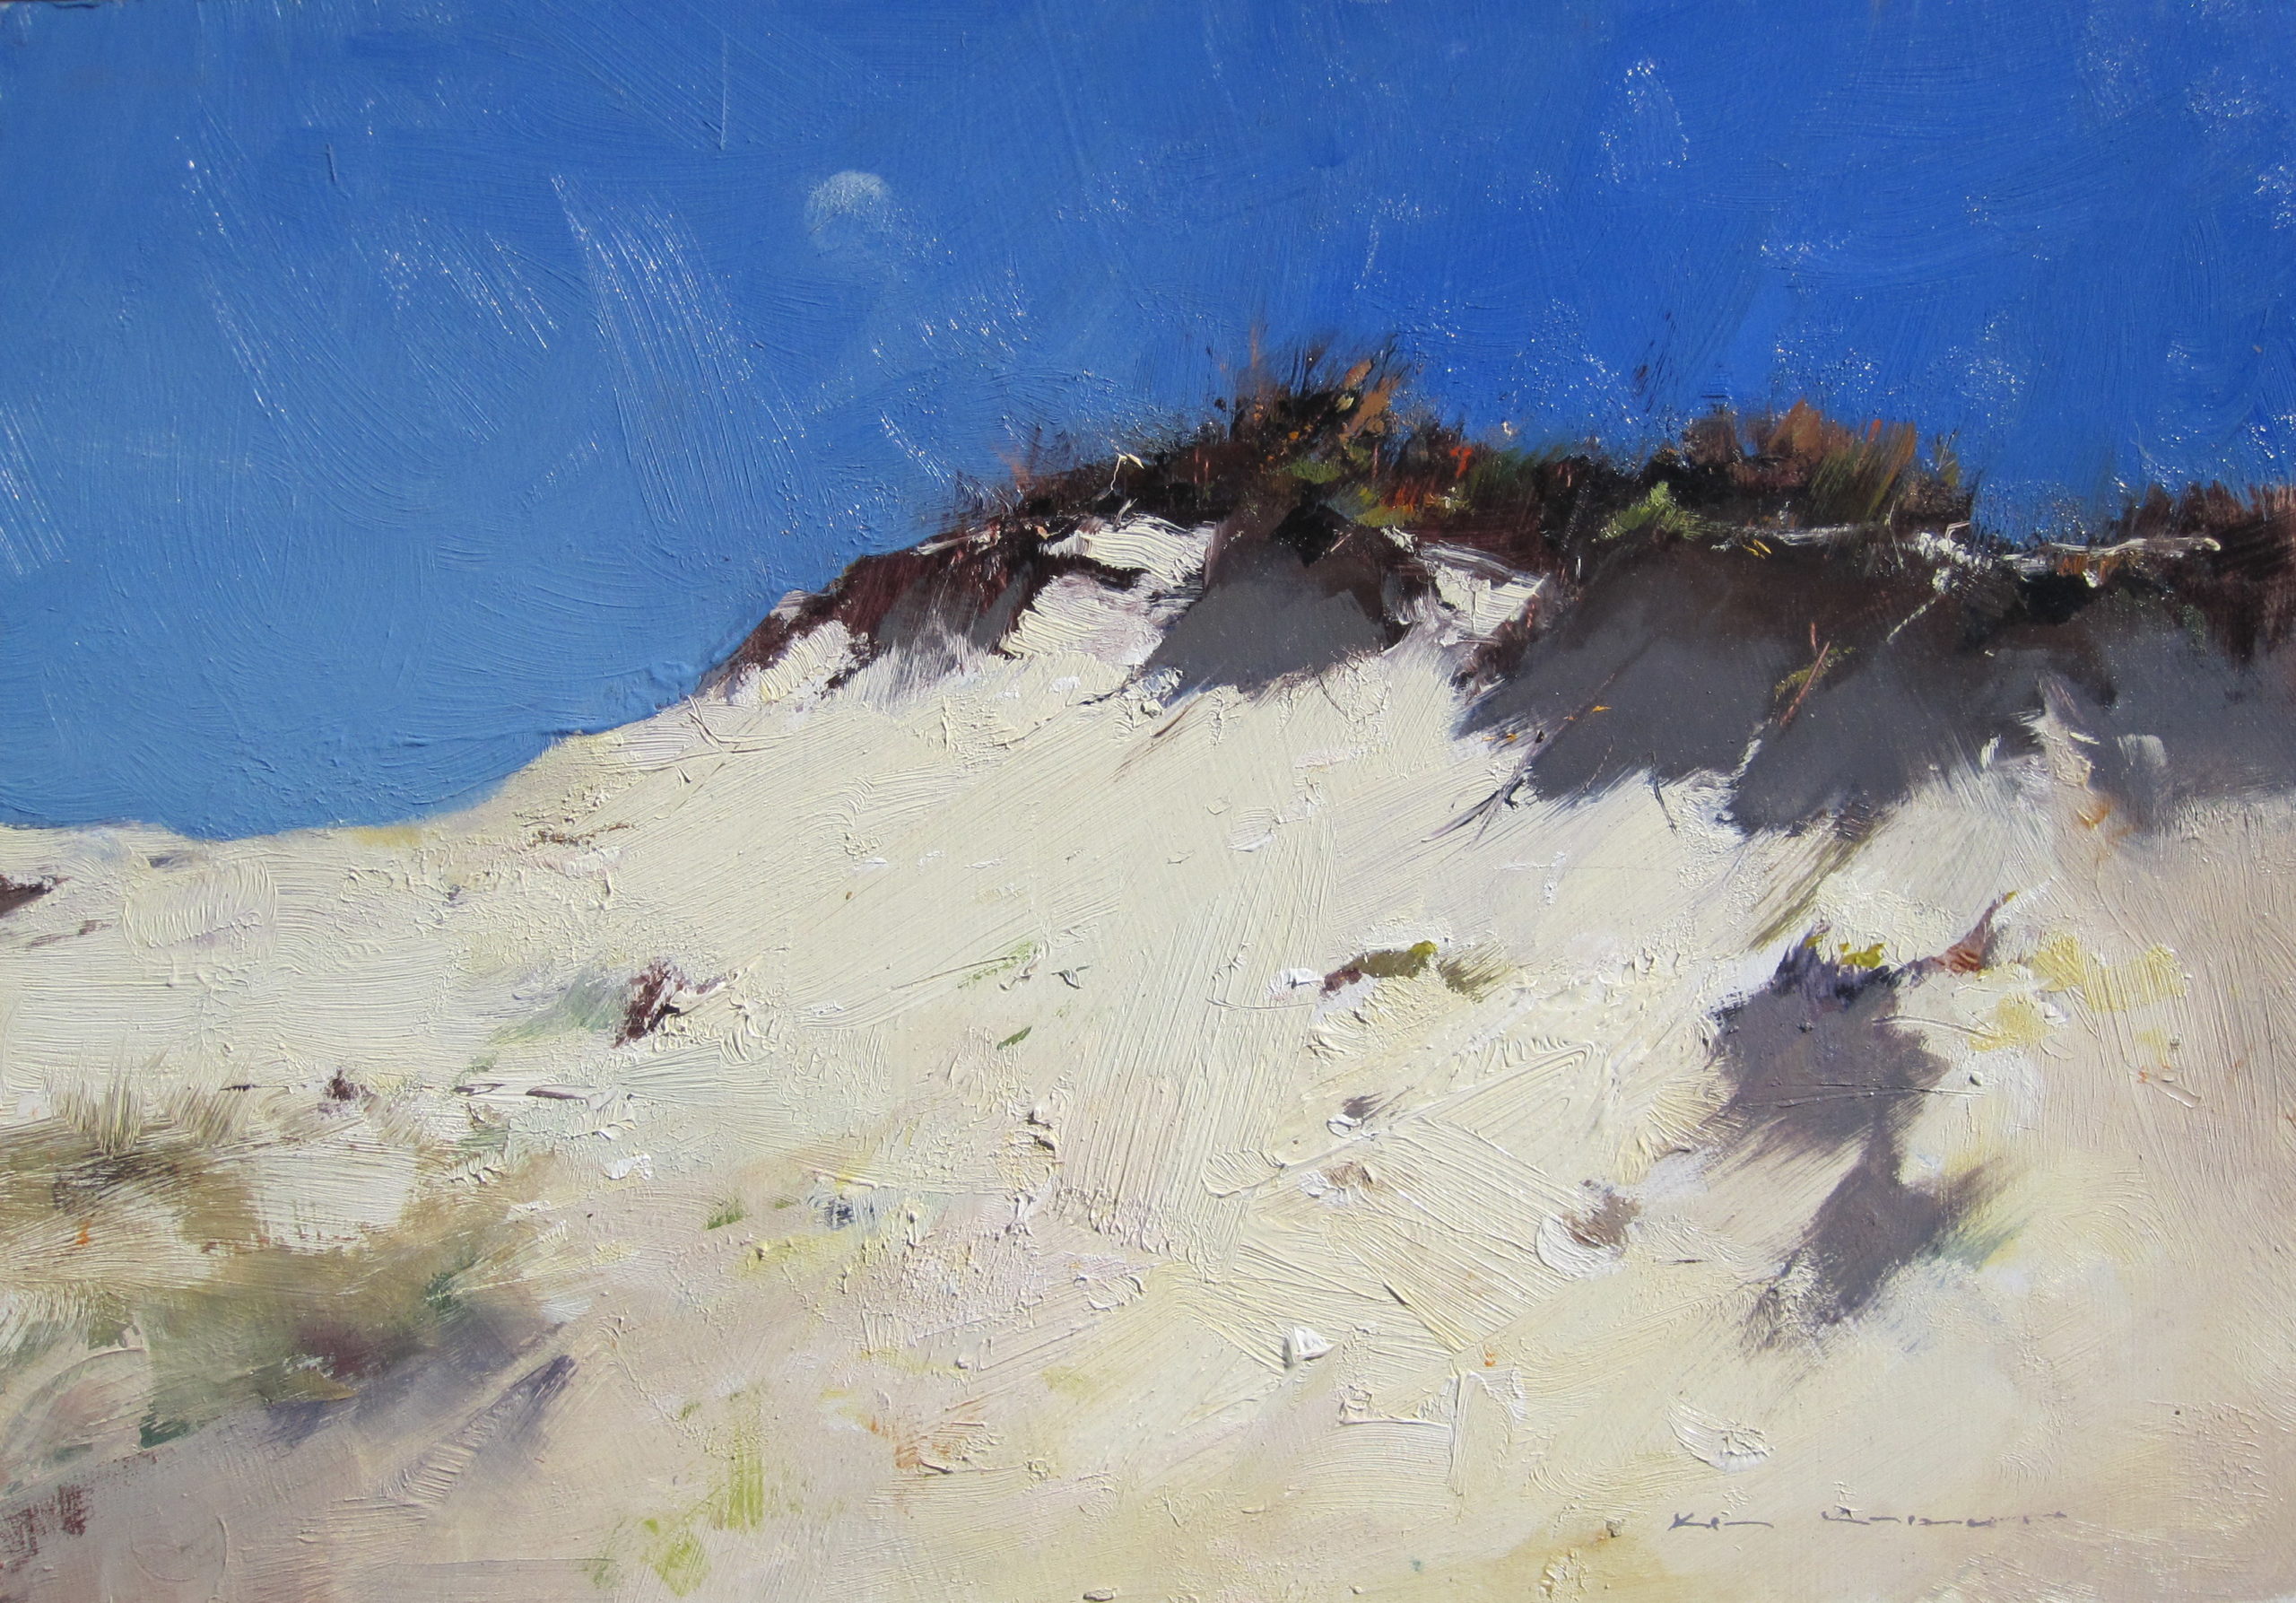 Ken Knight, "Sand Dune," 25 x 36 cm, Oil on panel